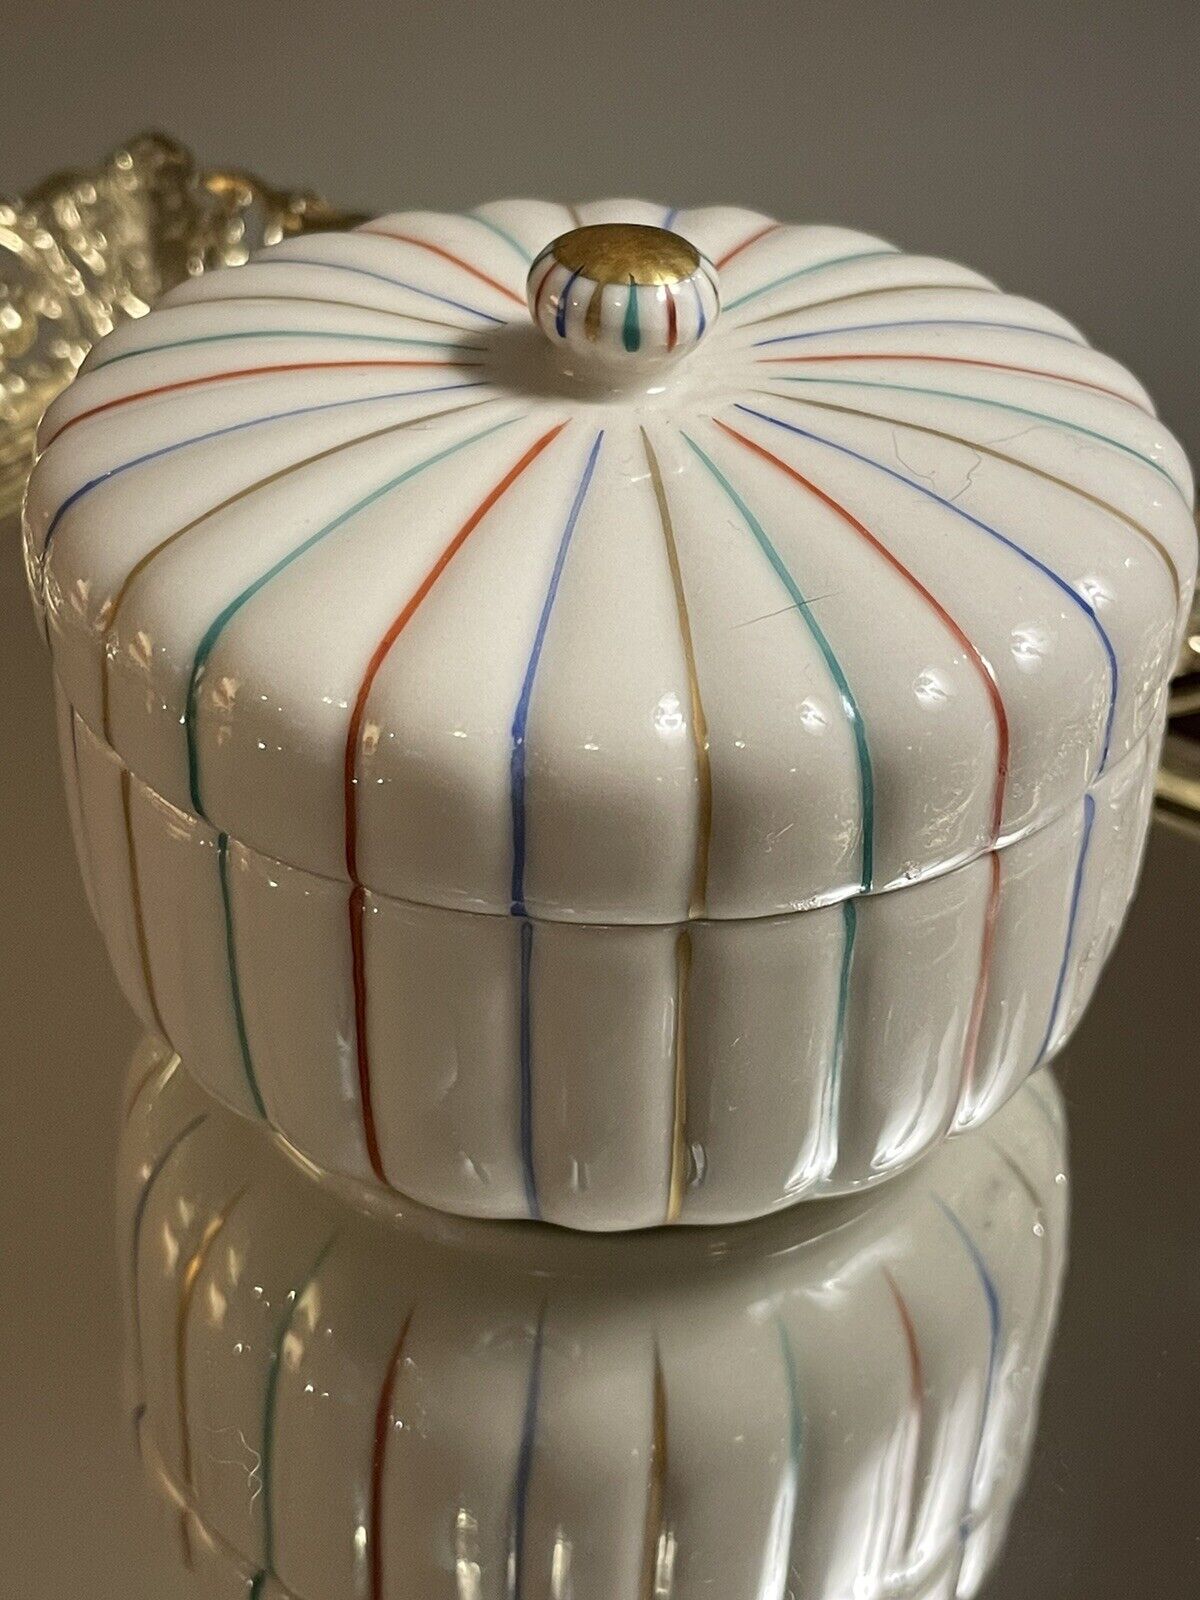 Kyo Kiyomizu Yaki Ware Japanese Covered Porcelain Rainbow Trinket Gift Stunning